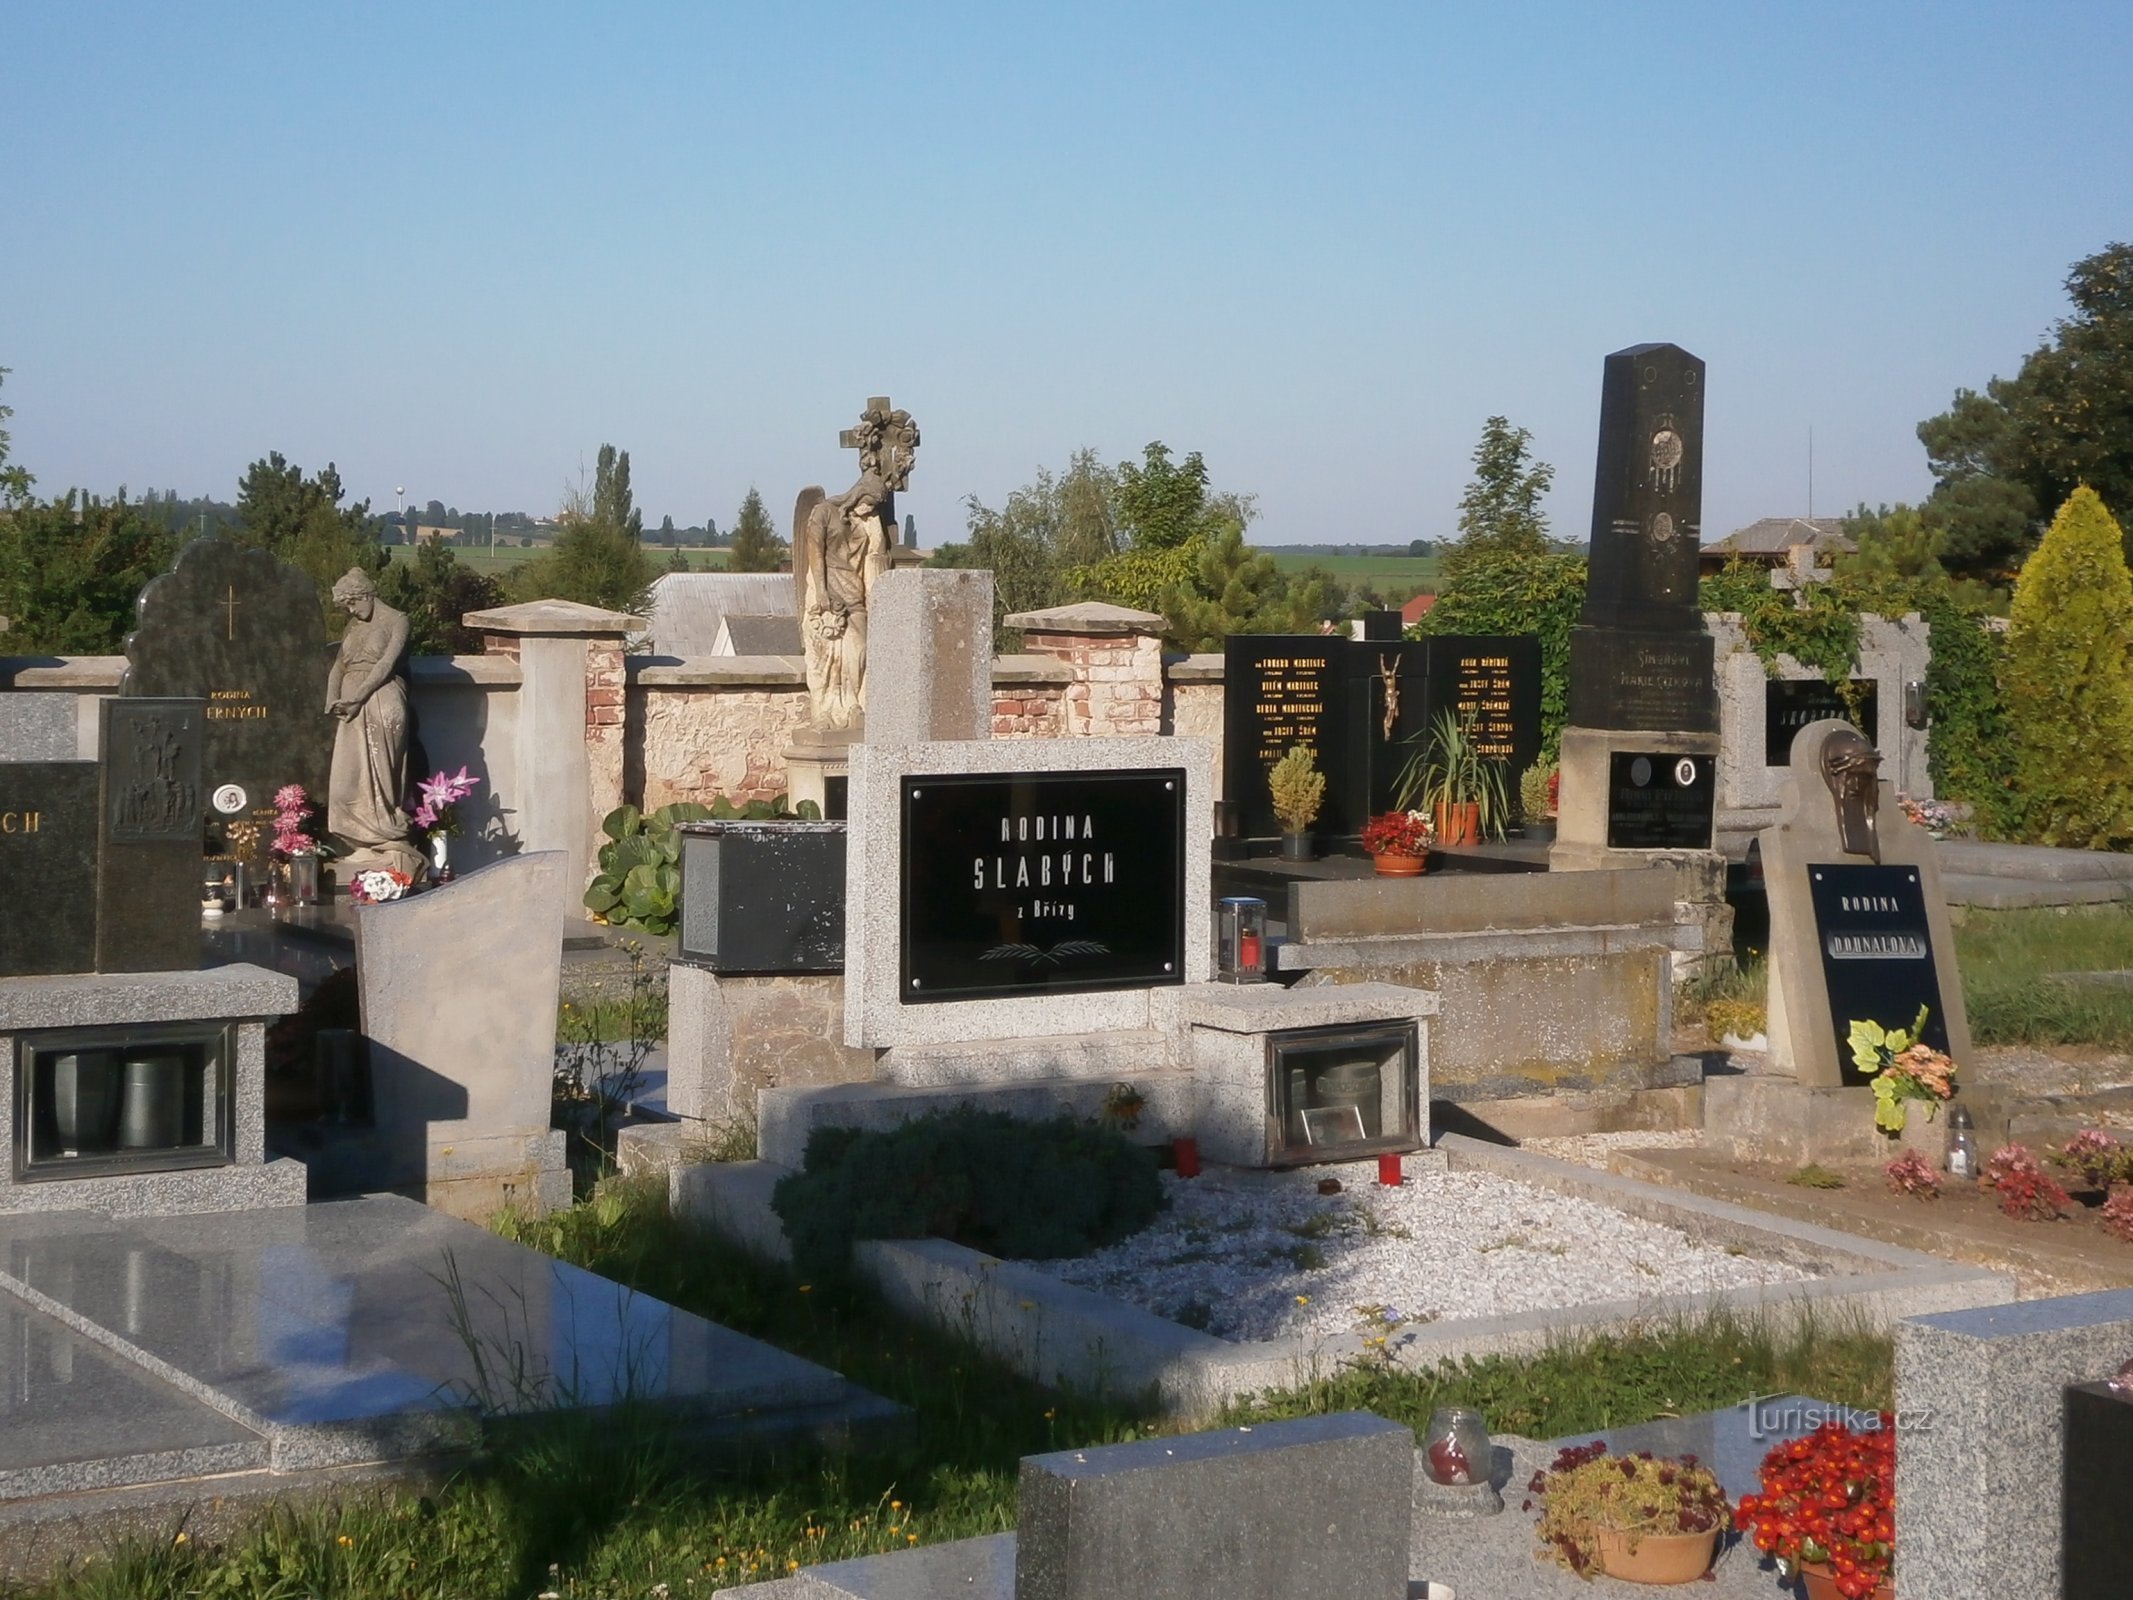 Cemetery (Všestary, 5.8.2017/XNUMX/XNUMX)